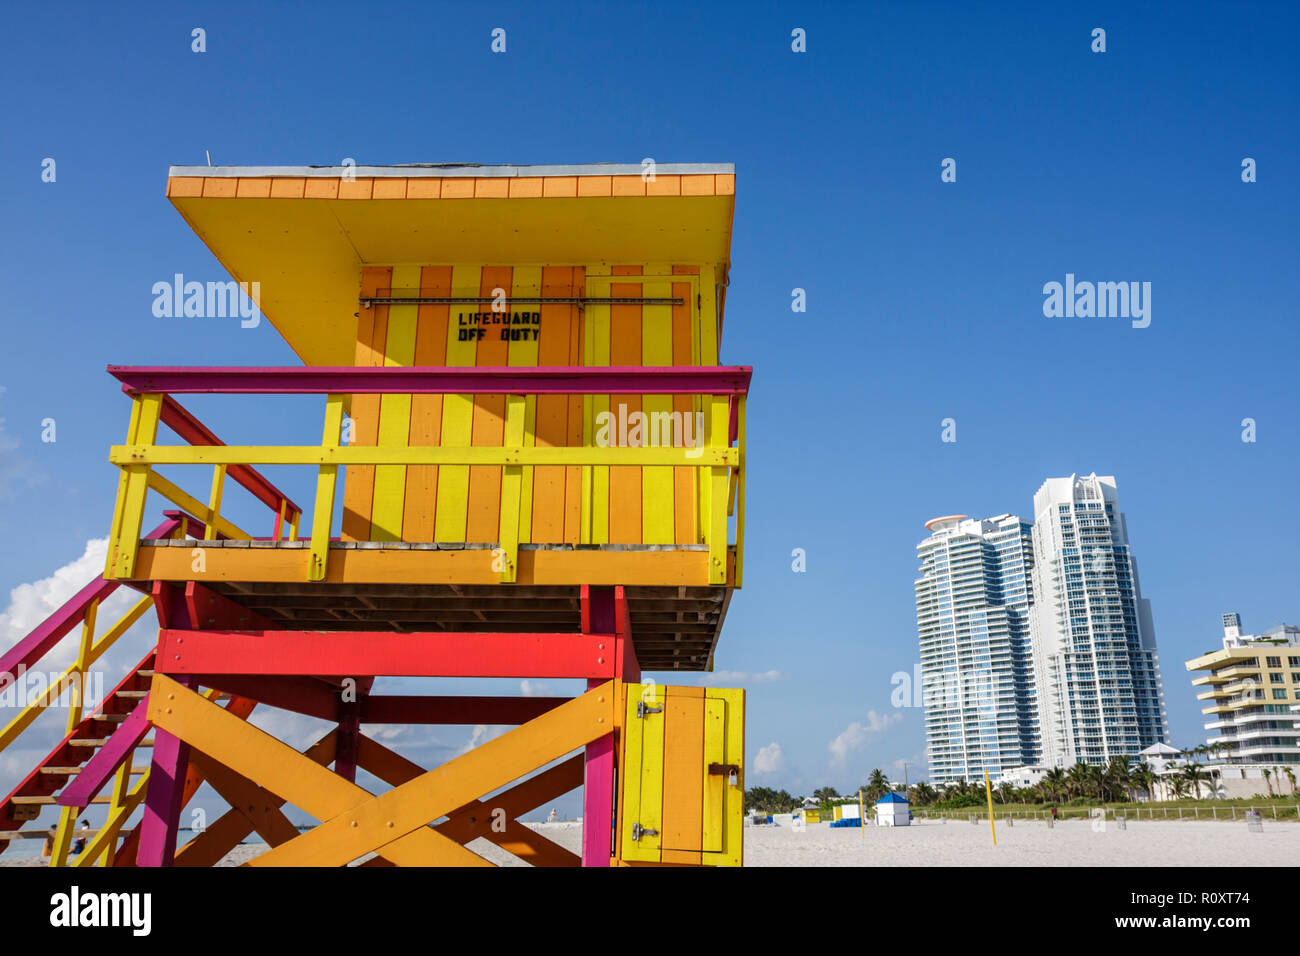 Miami Beach Florida, playa pública, arena, orilla, socorrista, torre, fuera de servicio, banda, color brillante, naranja, amarillo, señal, edificio, rascacielos de gran altura Foto de stock